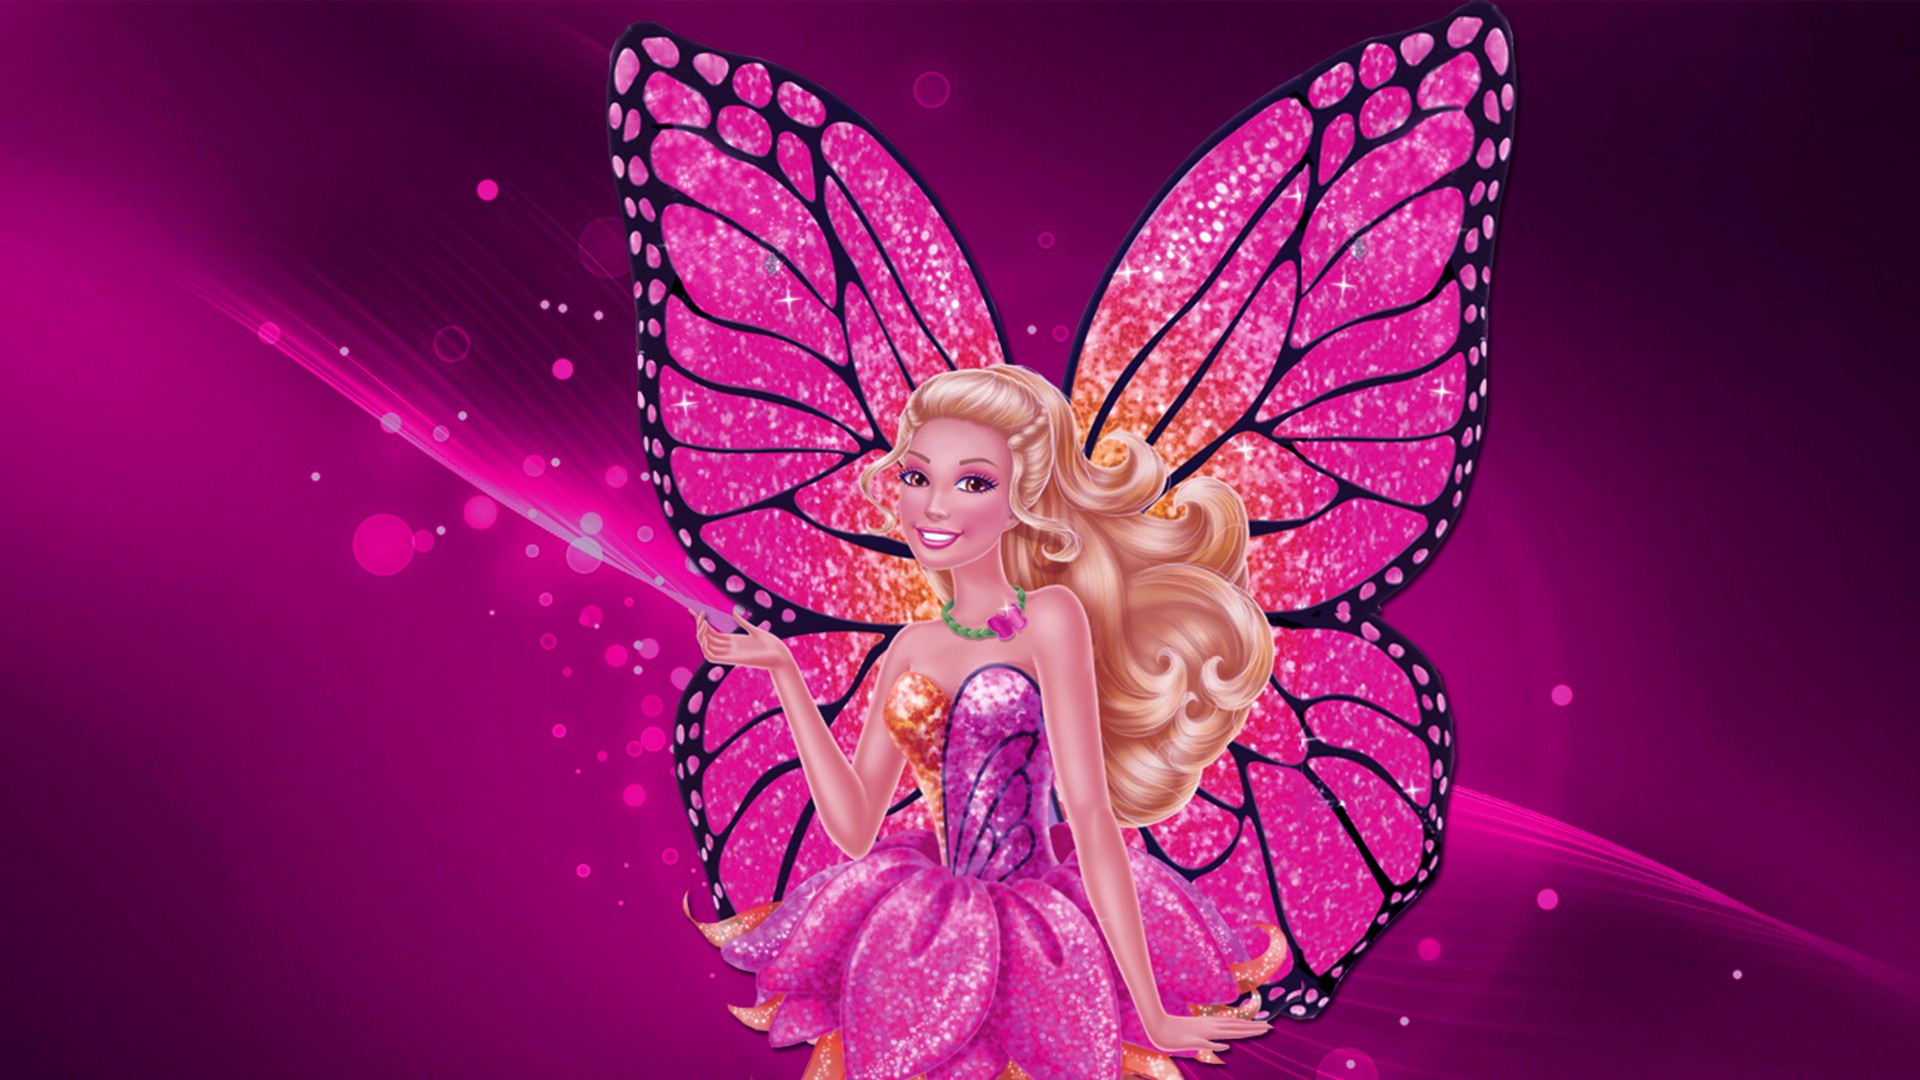 Wallpaper Dasktop Gambar Barbie 3d Image Num 83